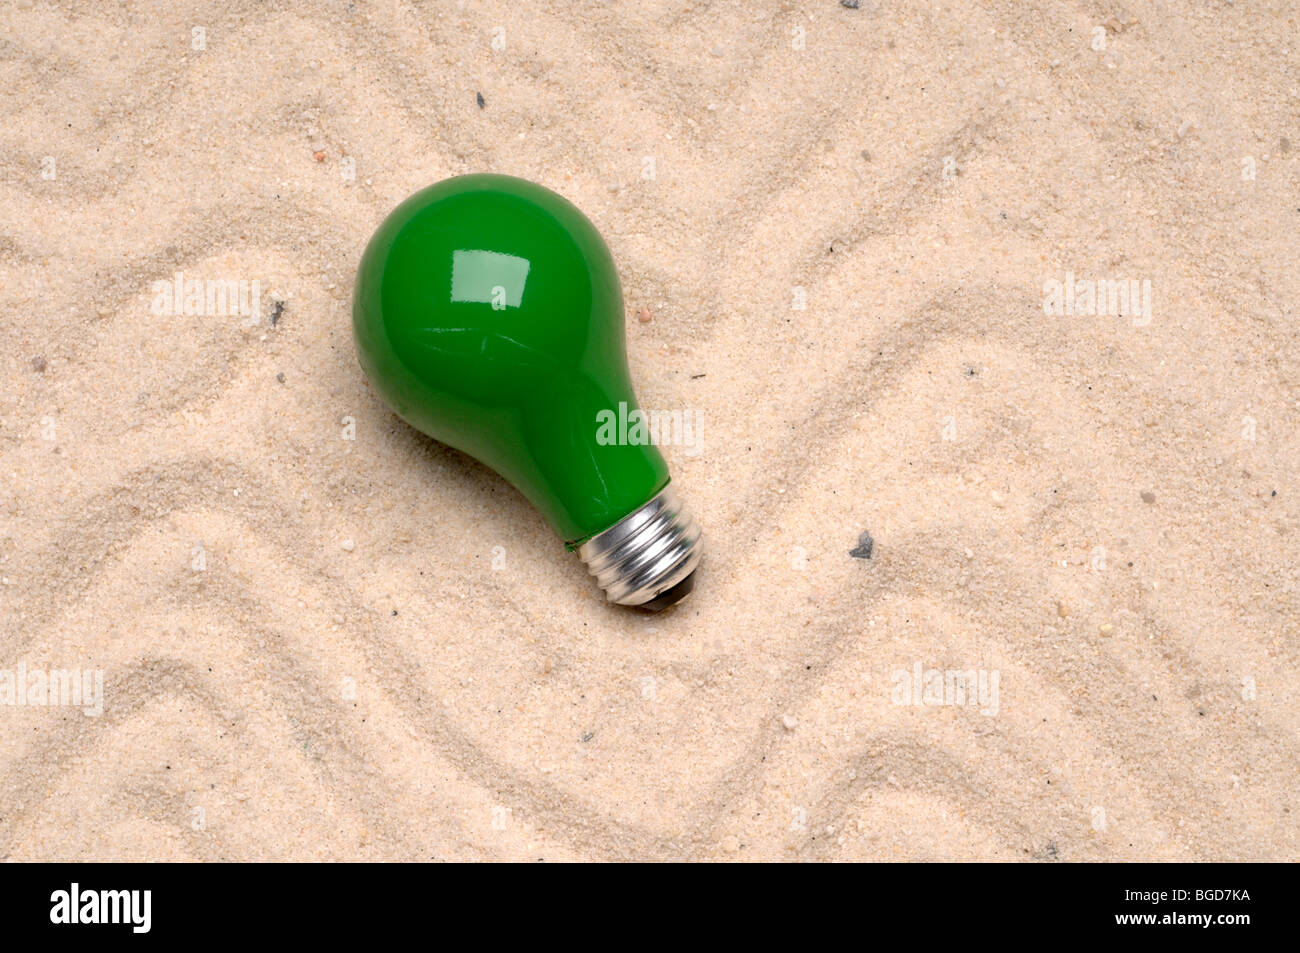 L'ampoule du feu vert jeté sur le sable Banque D'Images